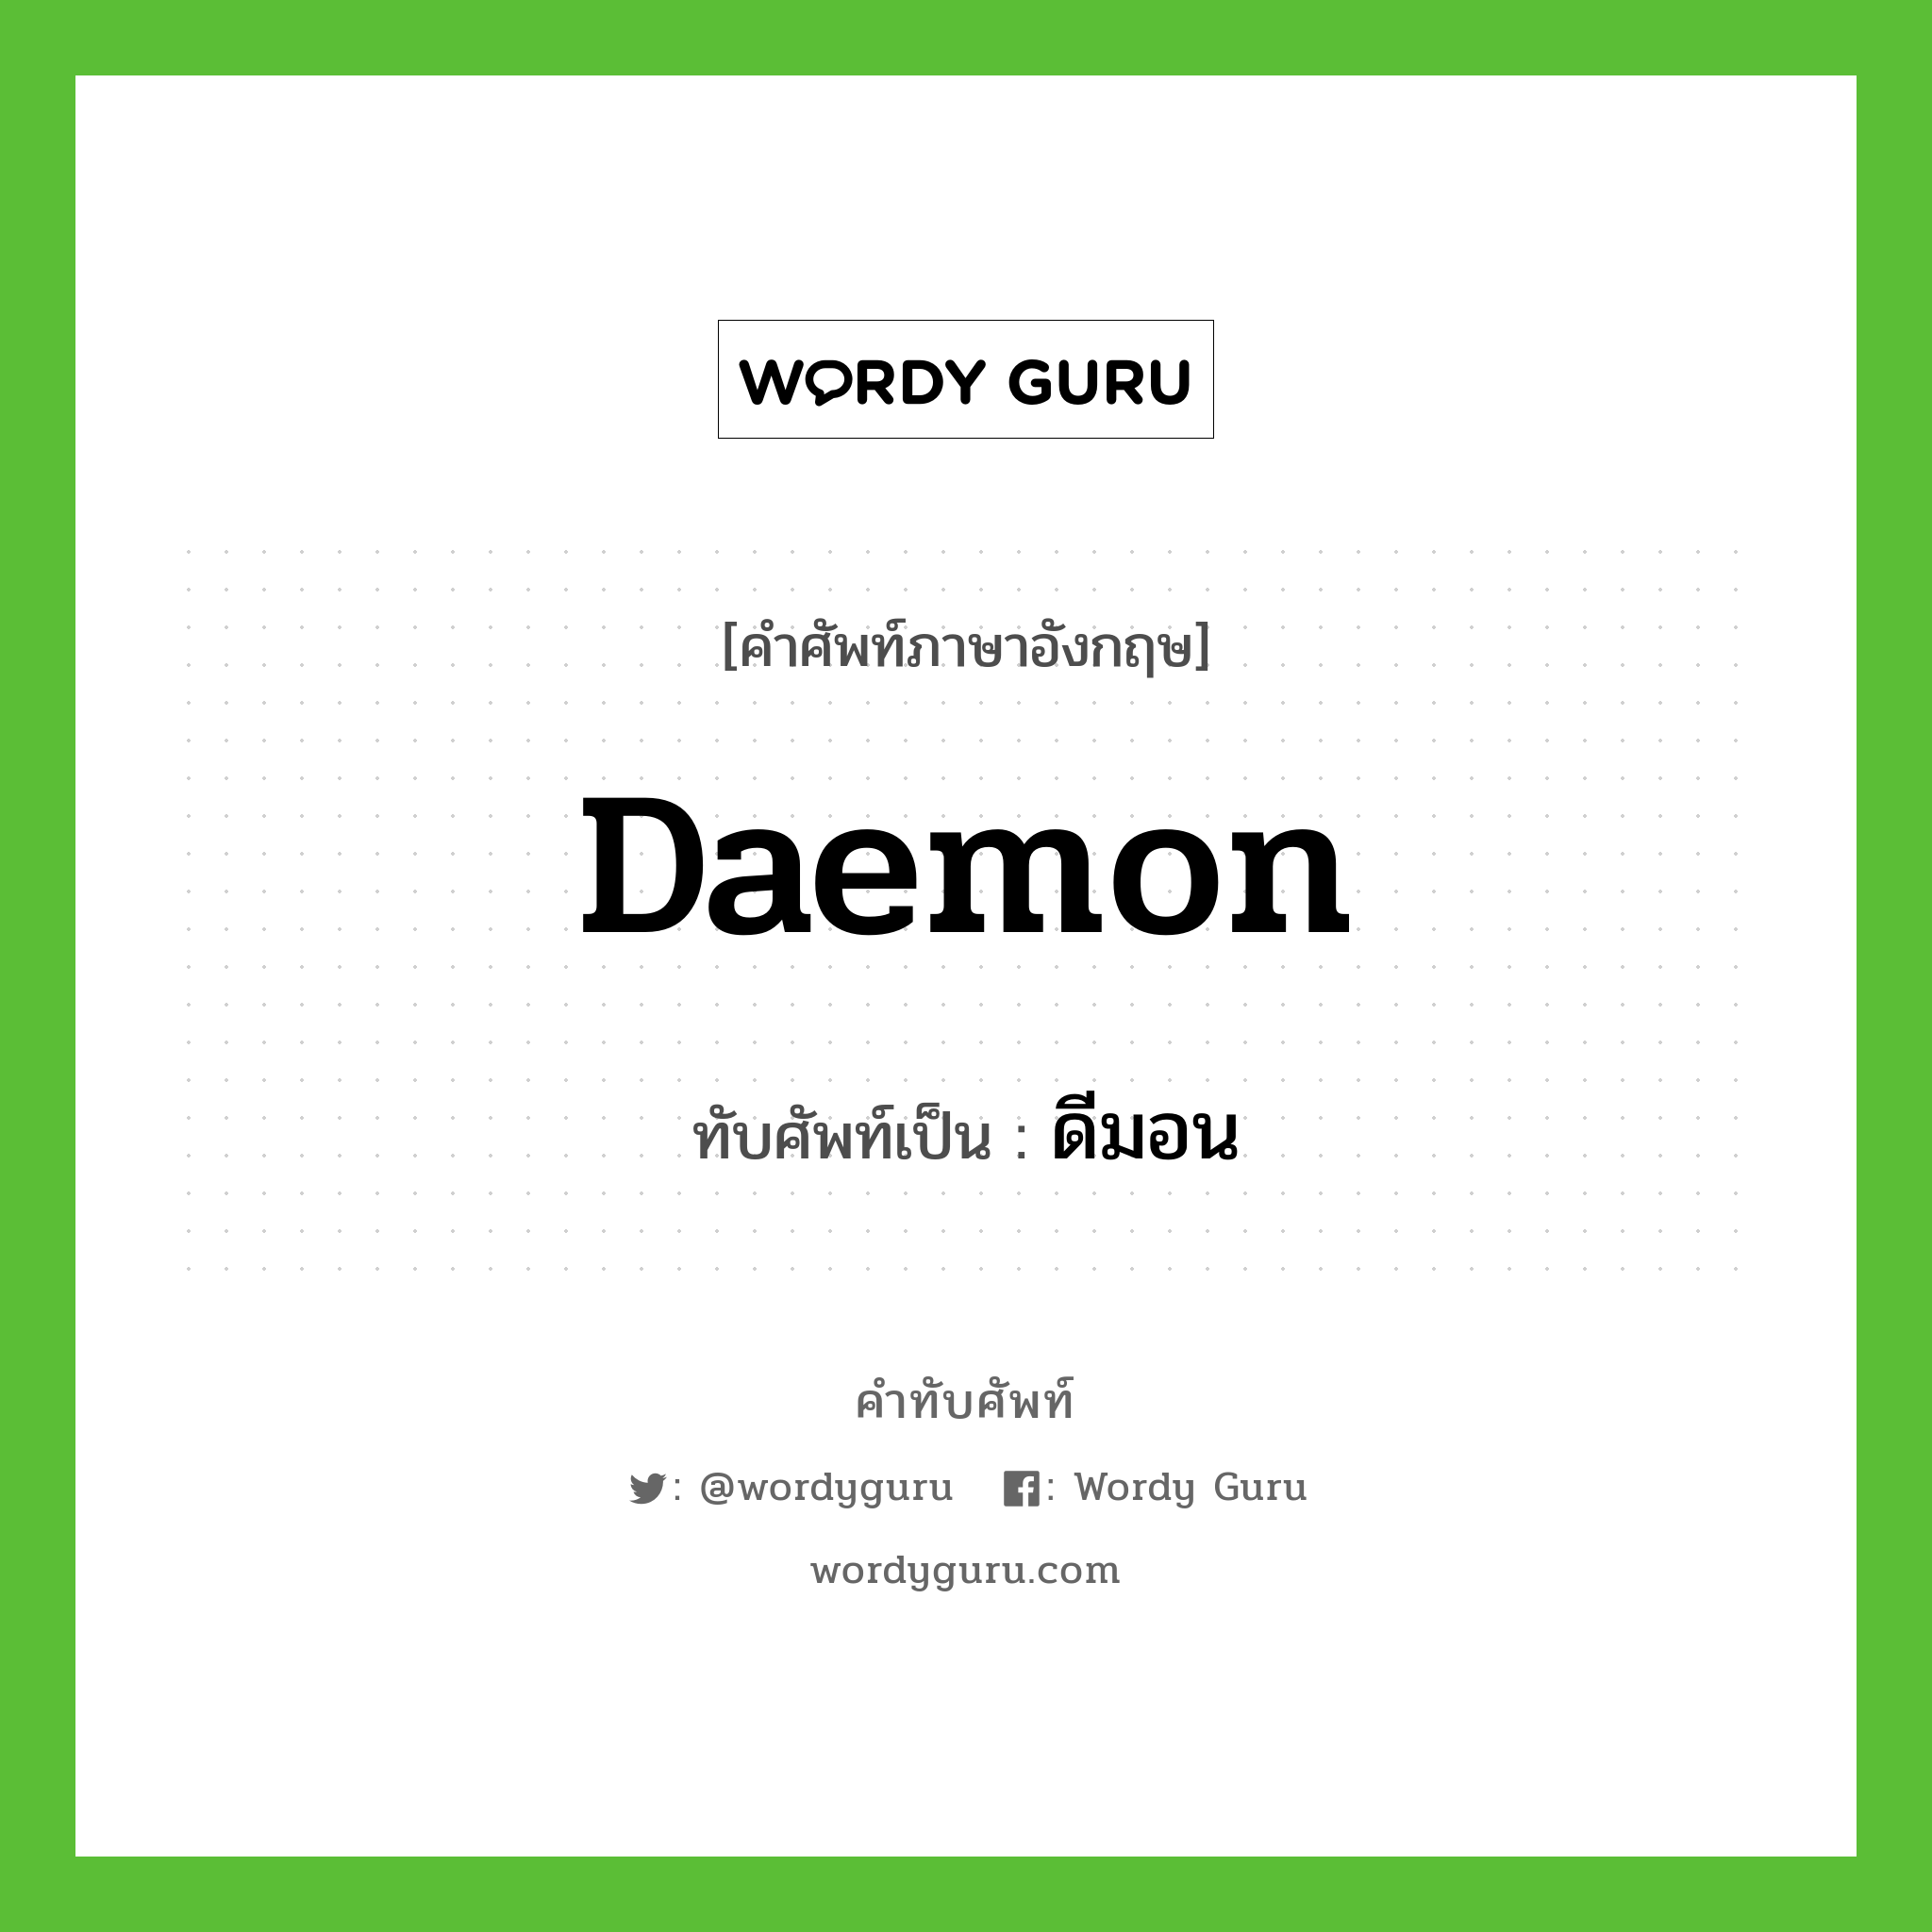 daemon เขียนเป็นคำไทยว่าอะไร?, คำศัพท์ภาษาอังกฤษ daemon ทับศัพท์เป็น ดีมอน